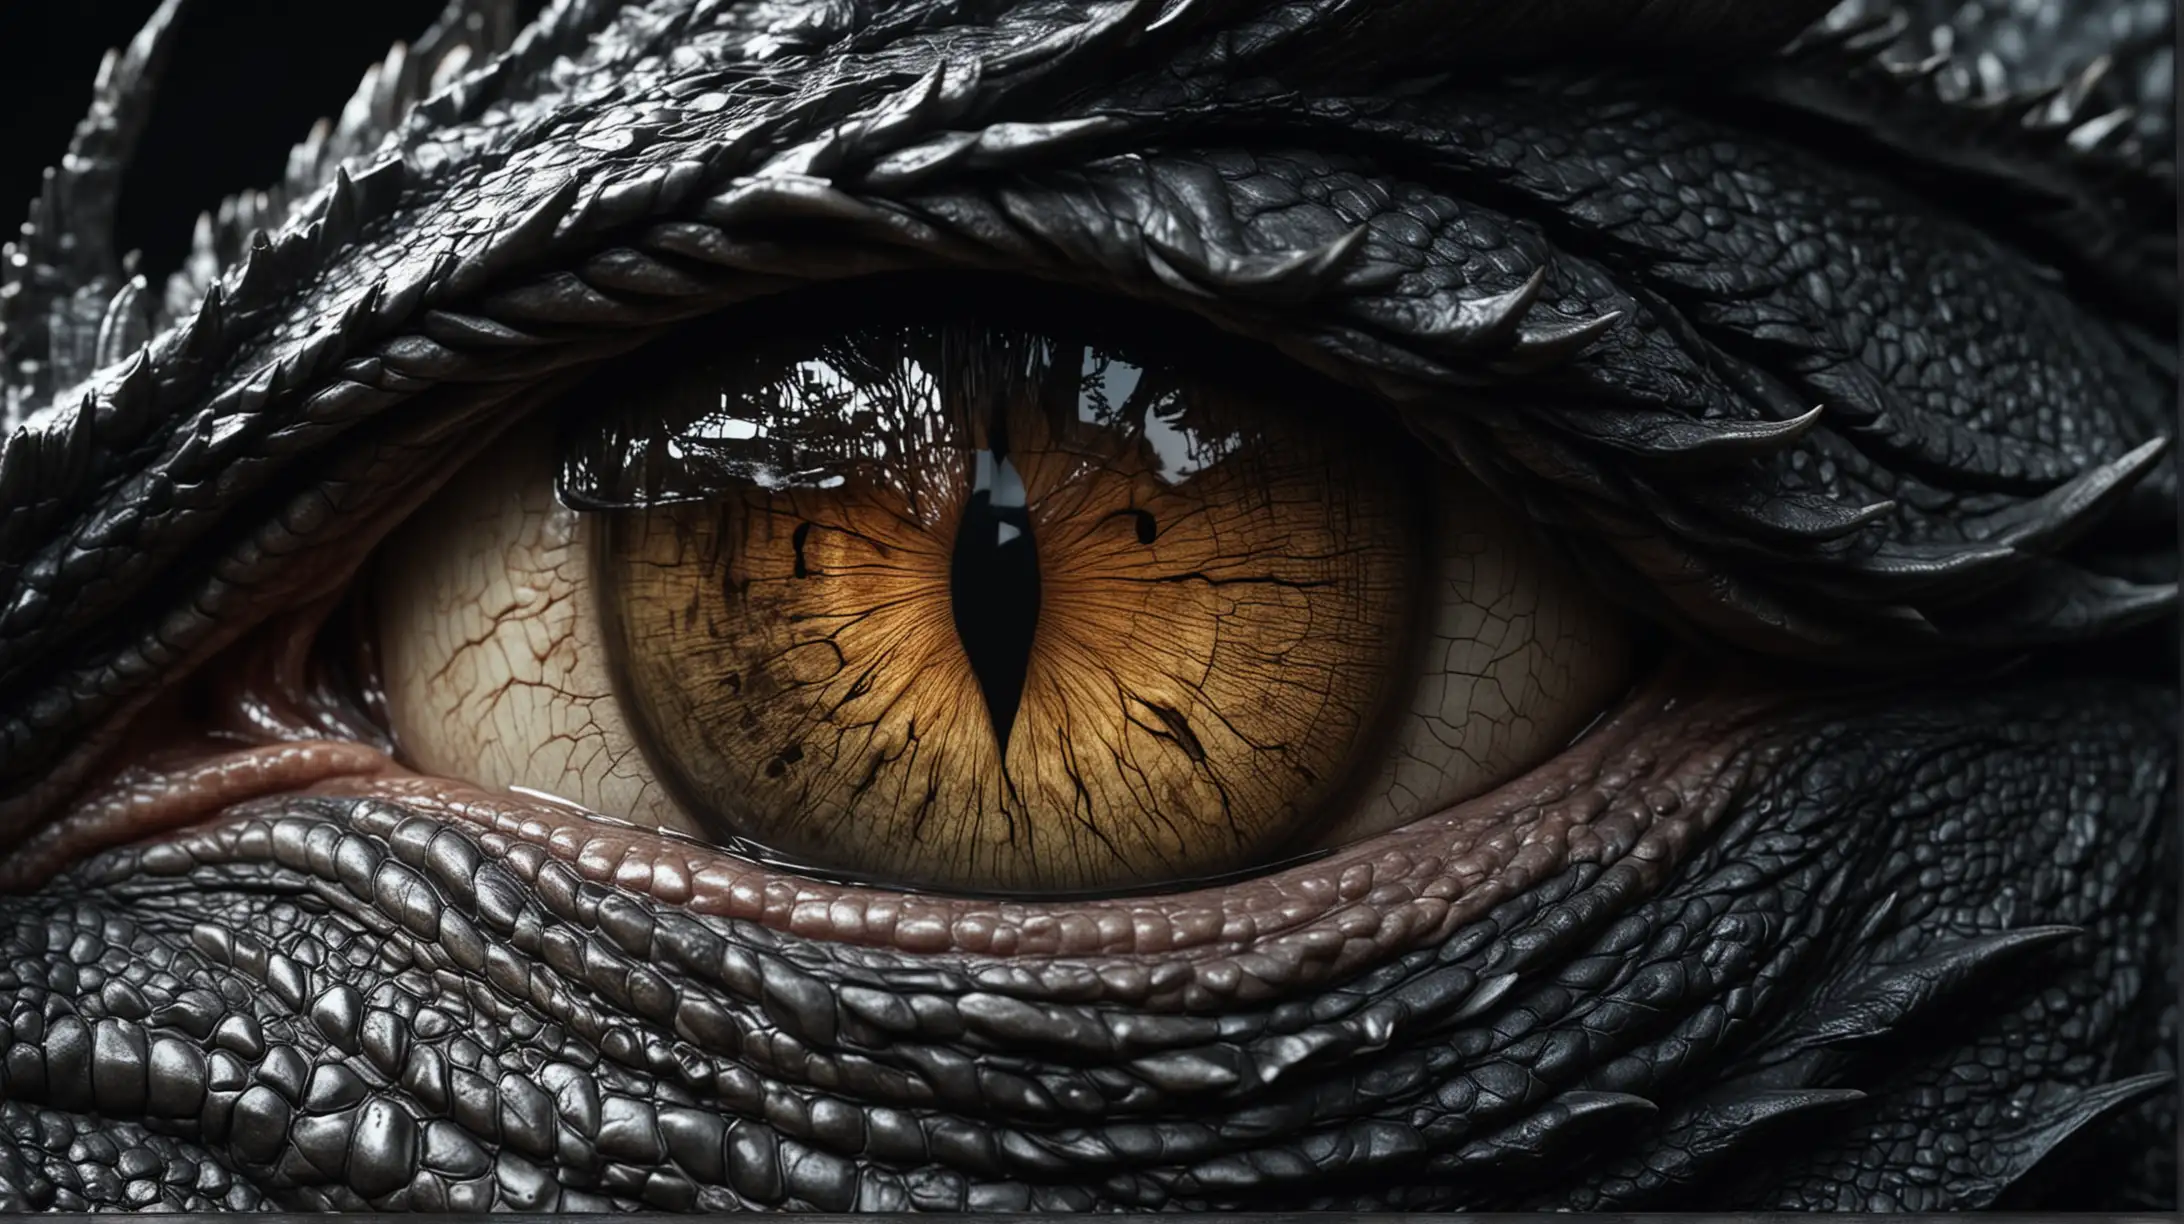 l'oeil d'un dragon, noir, hyperréaliste de haute qualité, 8K Ultra HD.